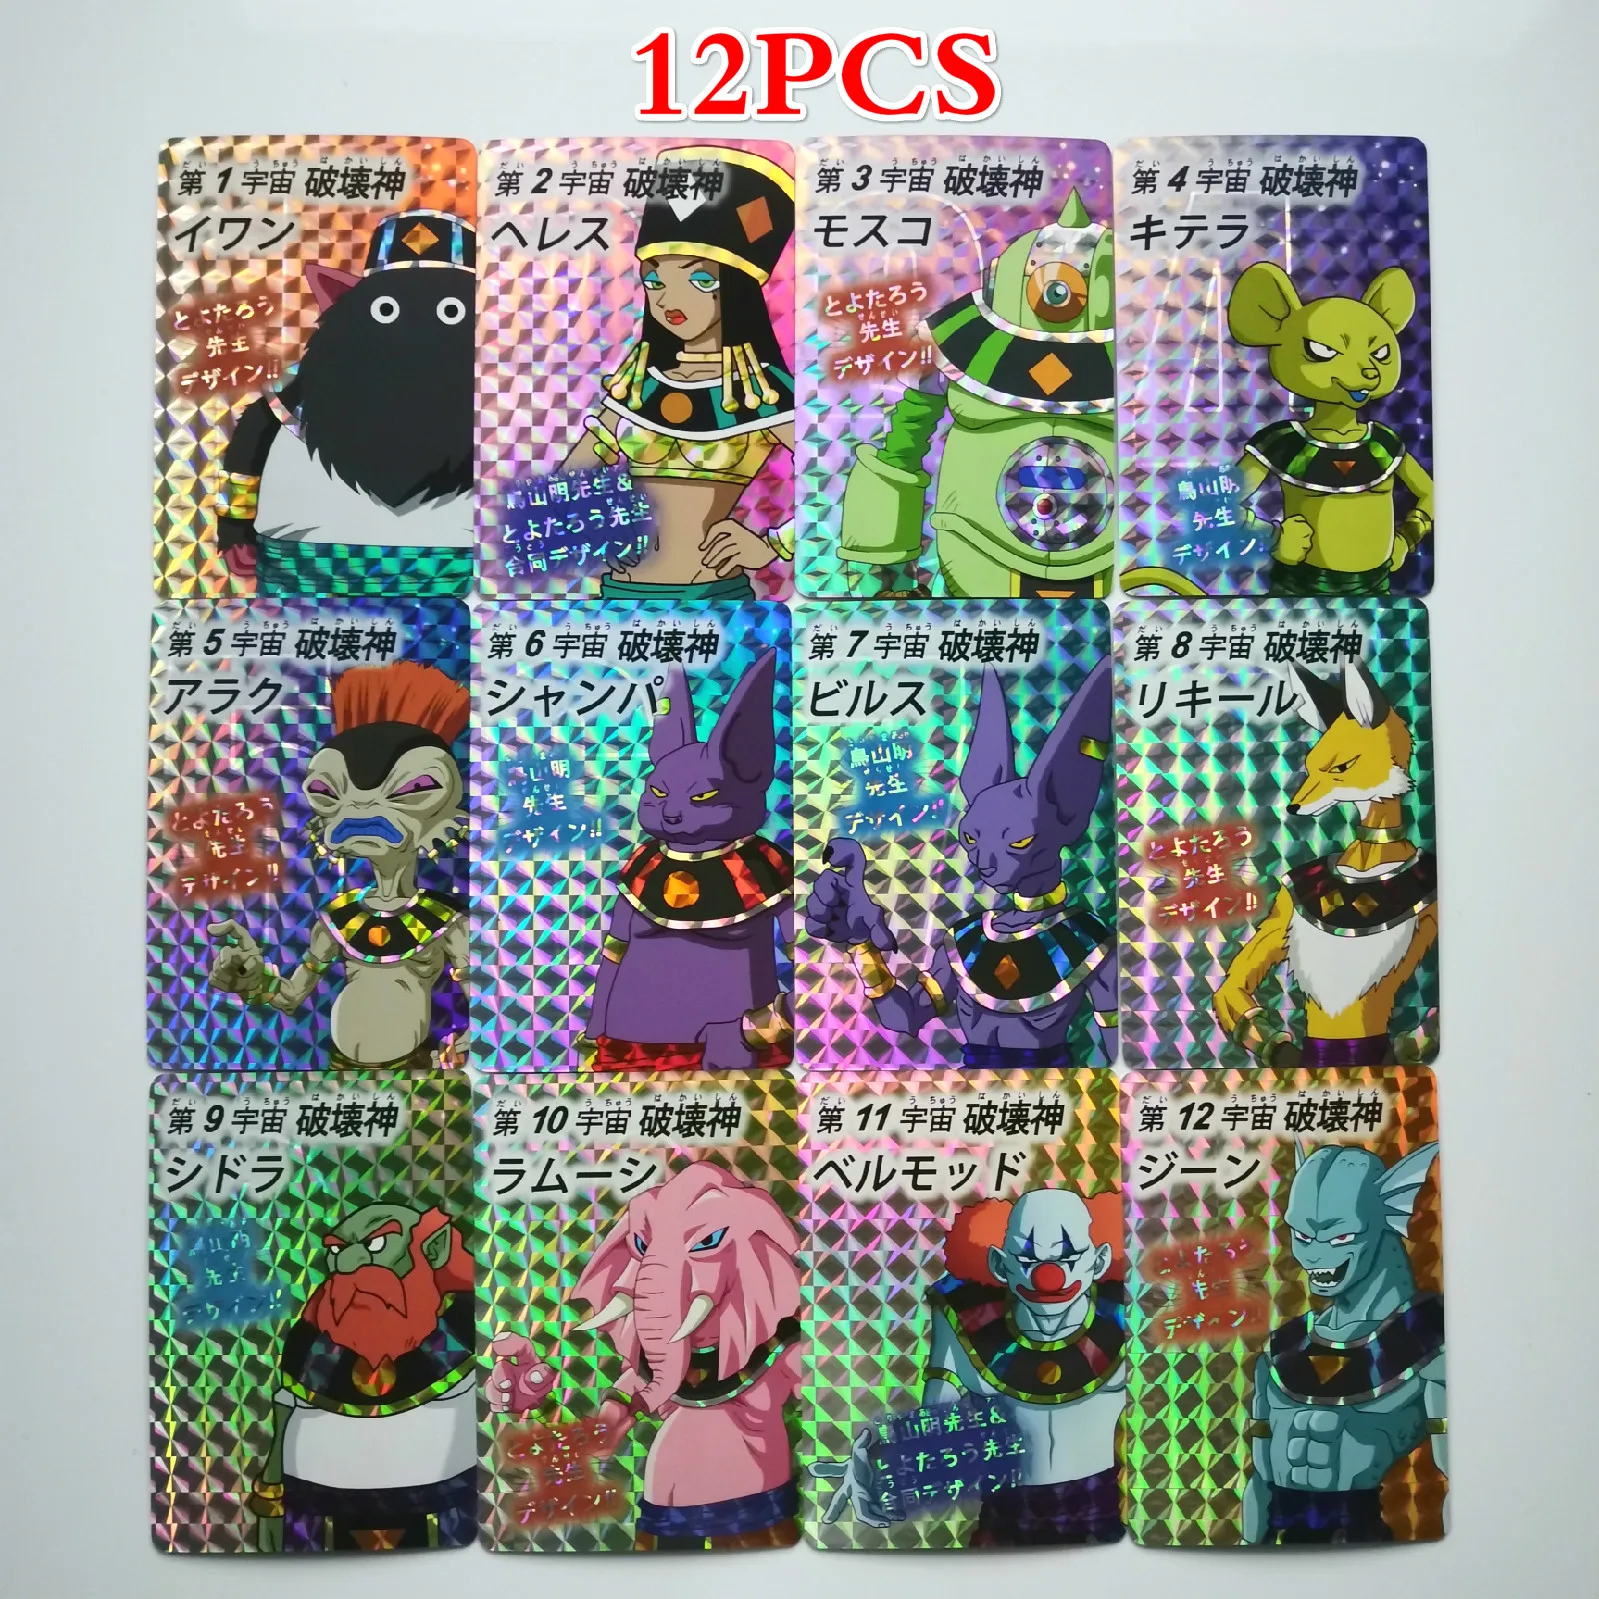 9 в 1 супер Dragon Ball-Z ограничено до 50 комплектов героев битва карты Ultra Instinct Гоку Вегета игра Коллекция аниме-открытки